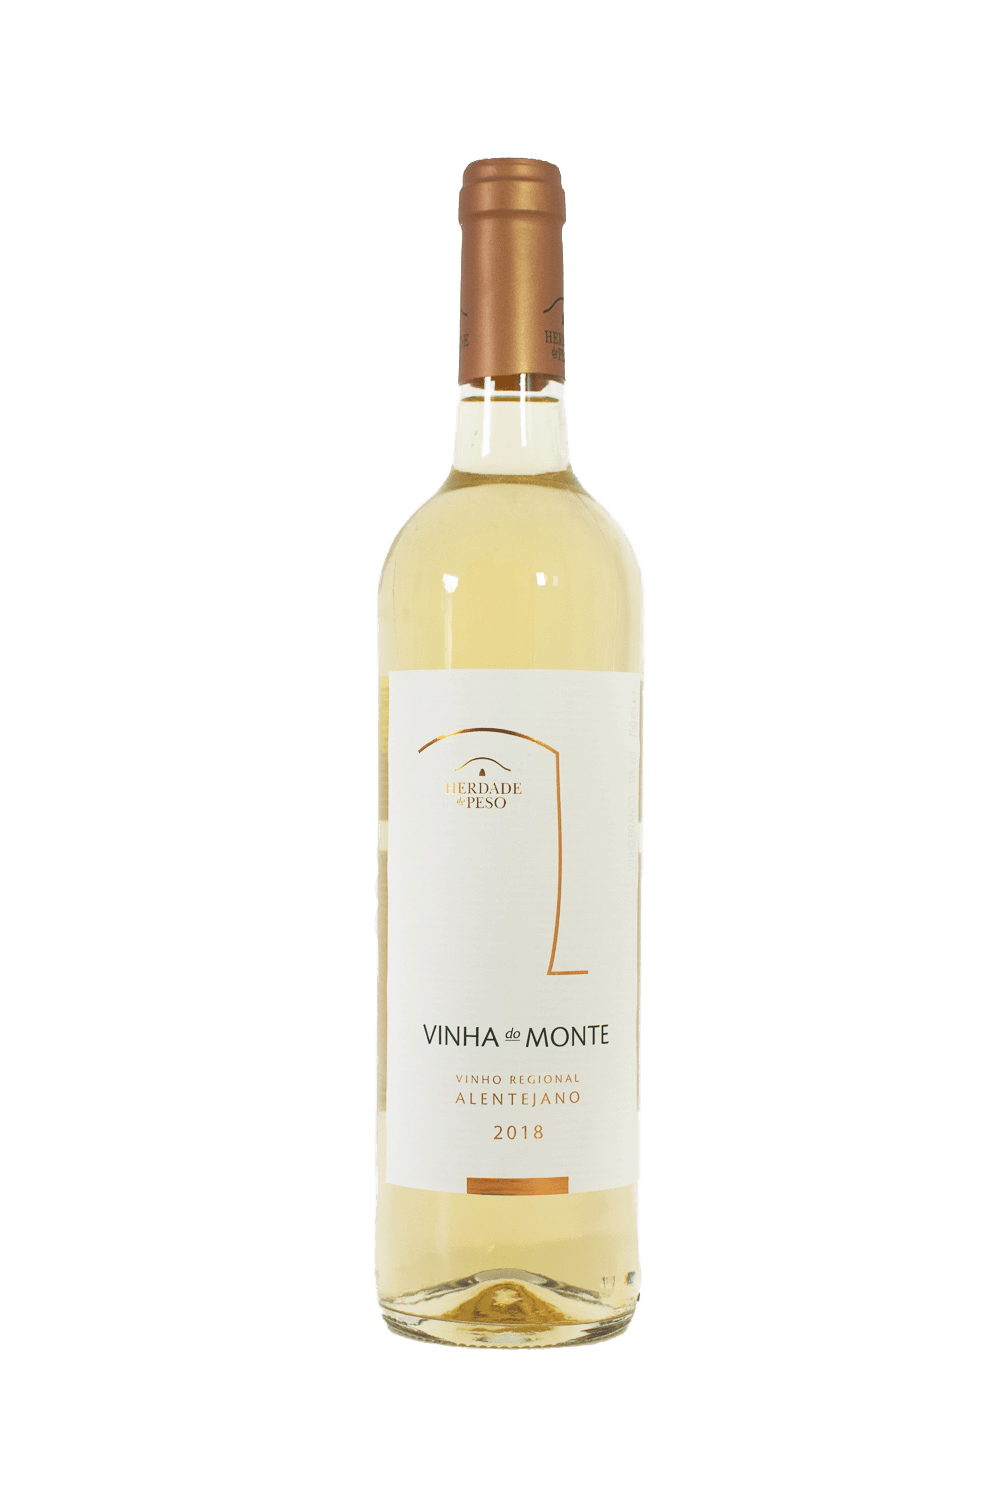 Herdade do Peso - Vinha do Monte Branco 2018 - The Blend Wines